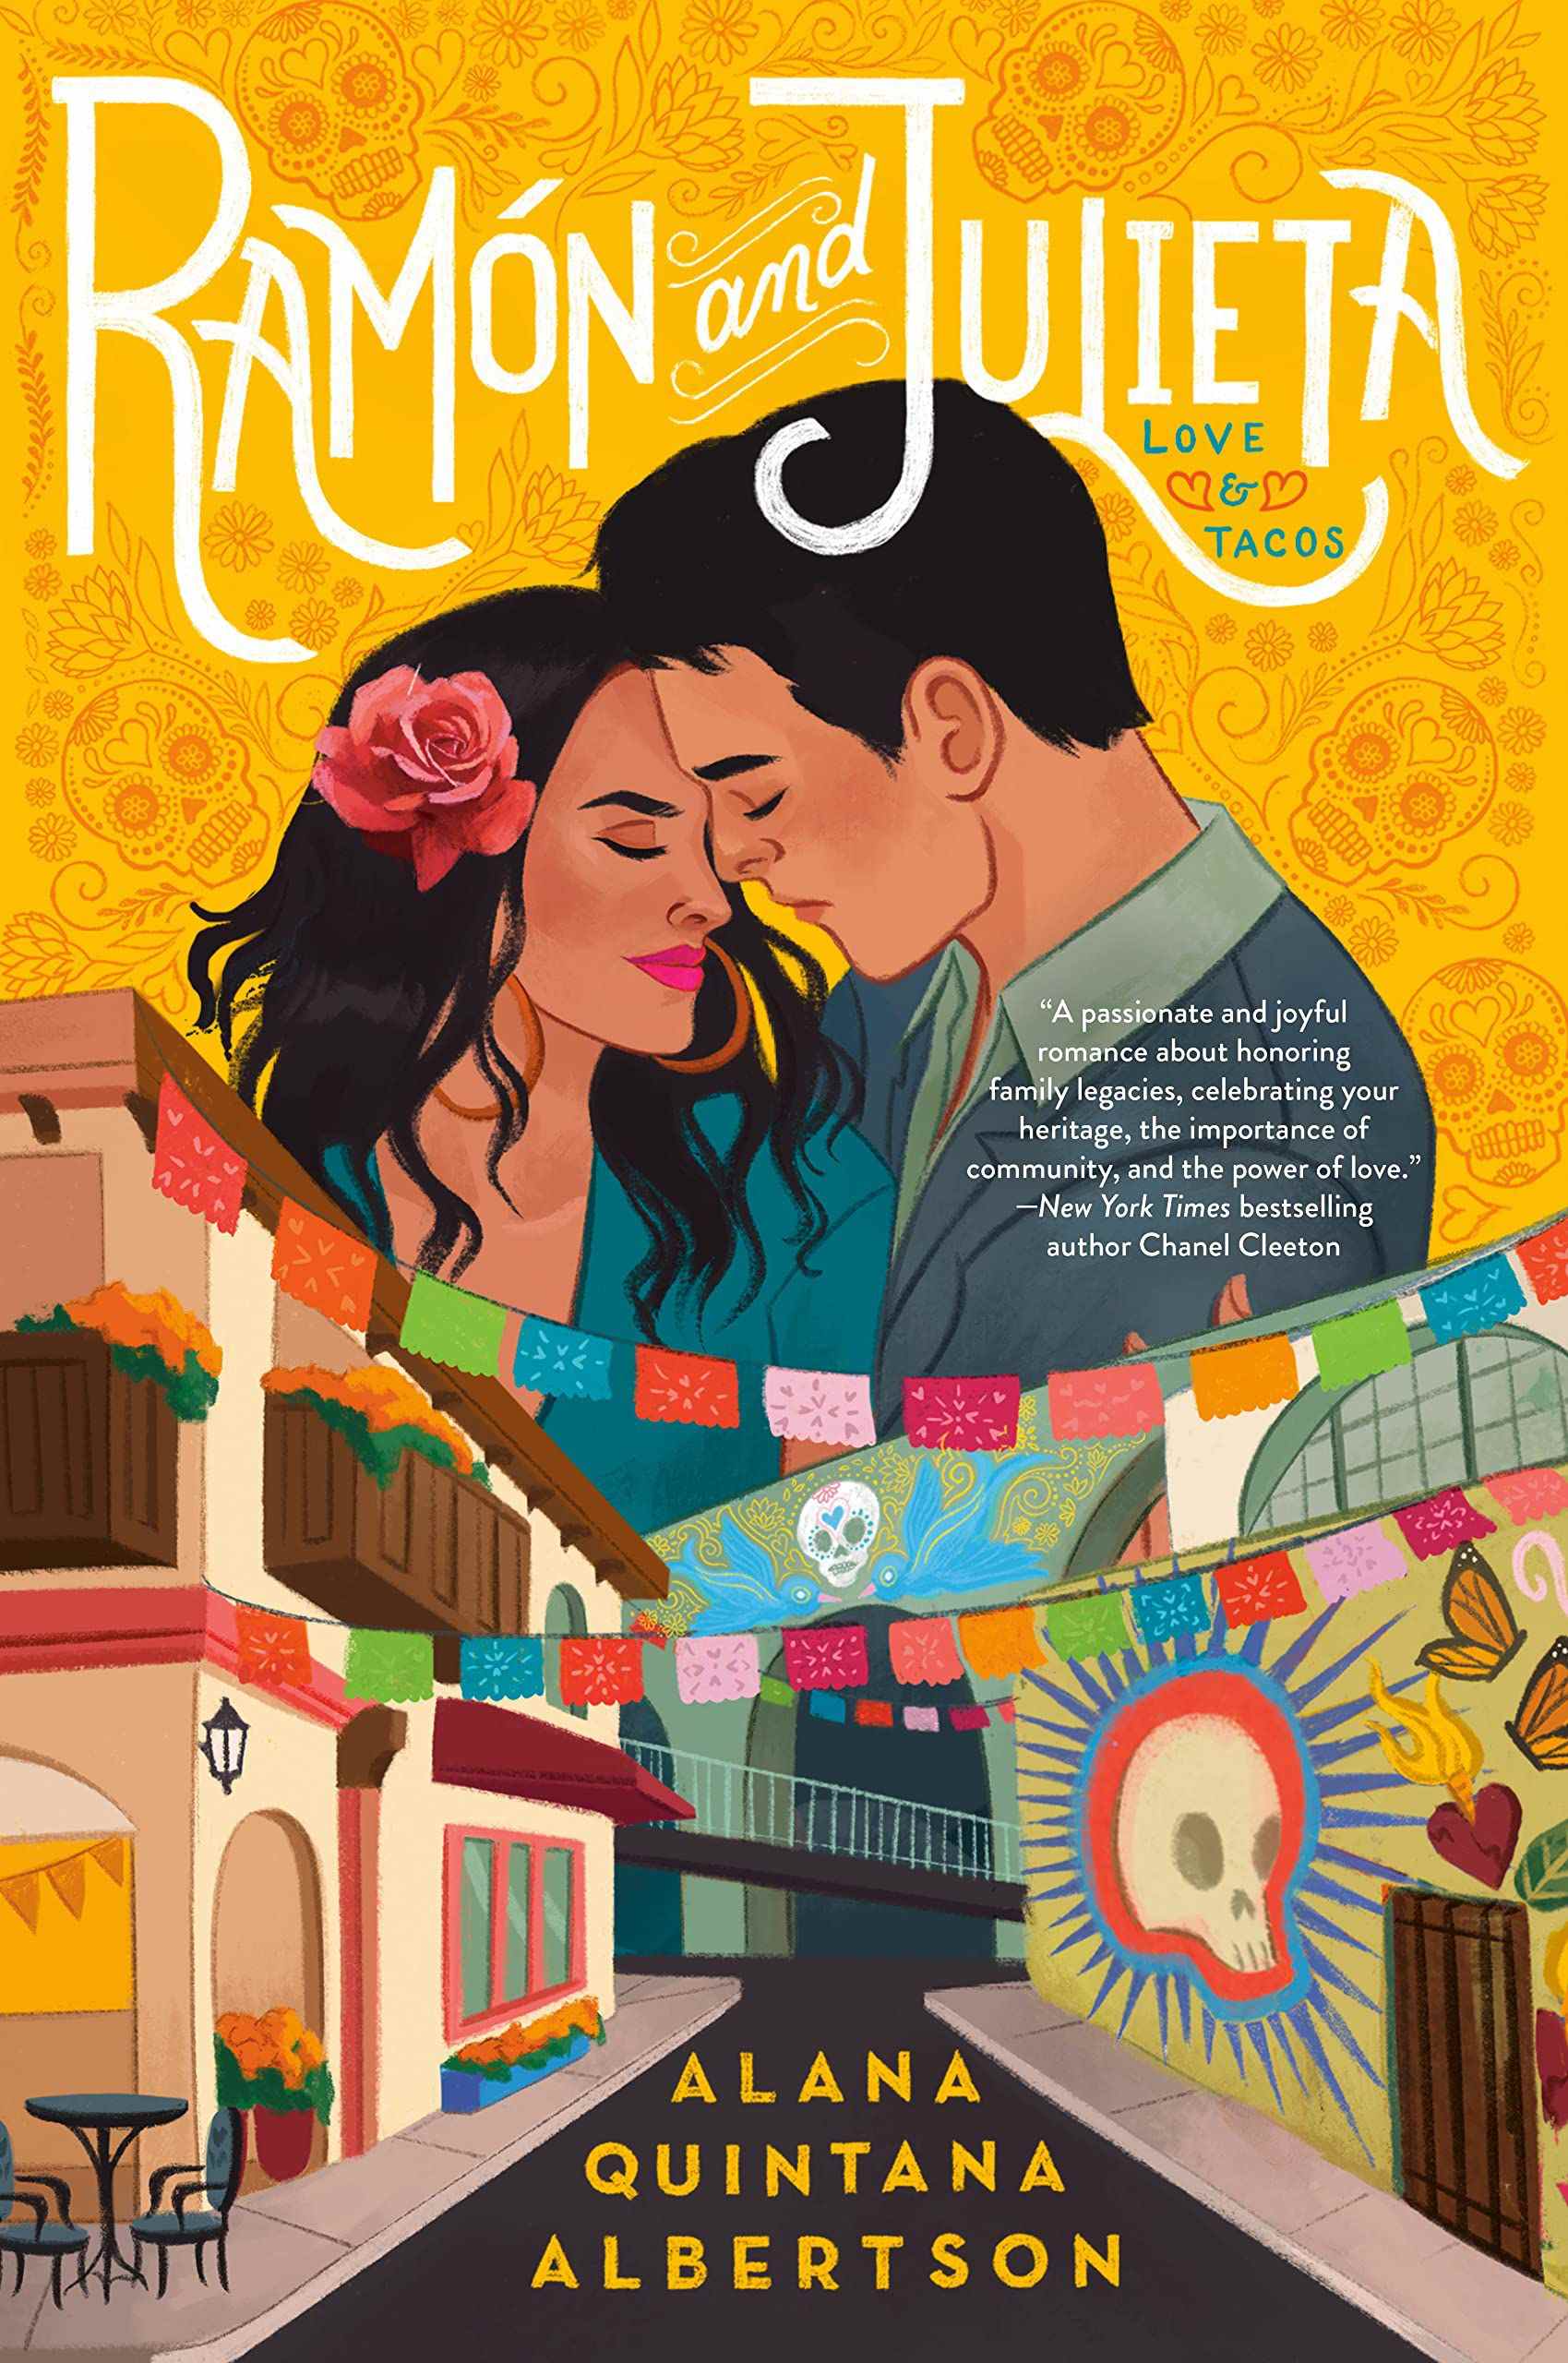 Image de couverture de Ramón et Julieta par Alana Quintana Albertson.